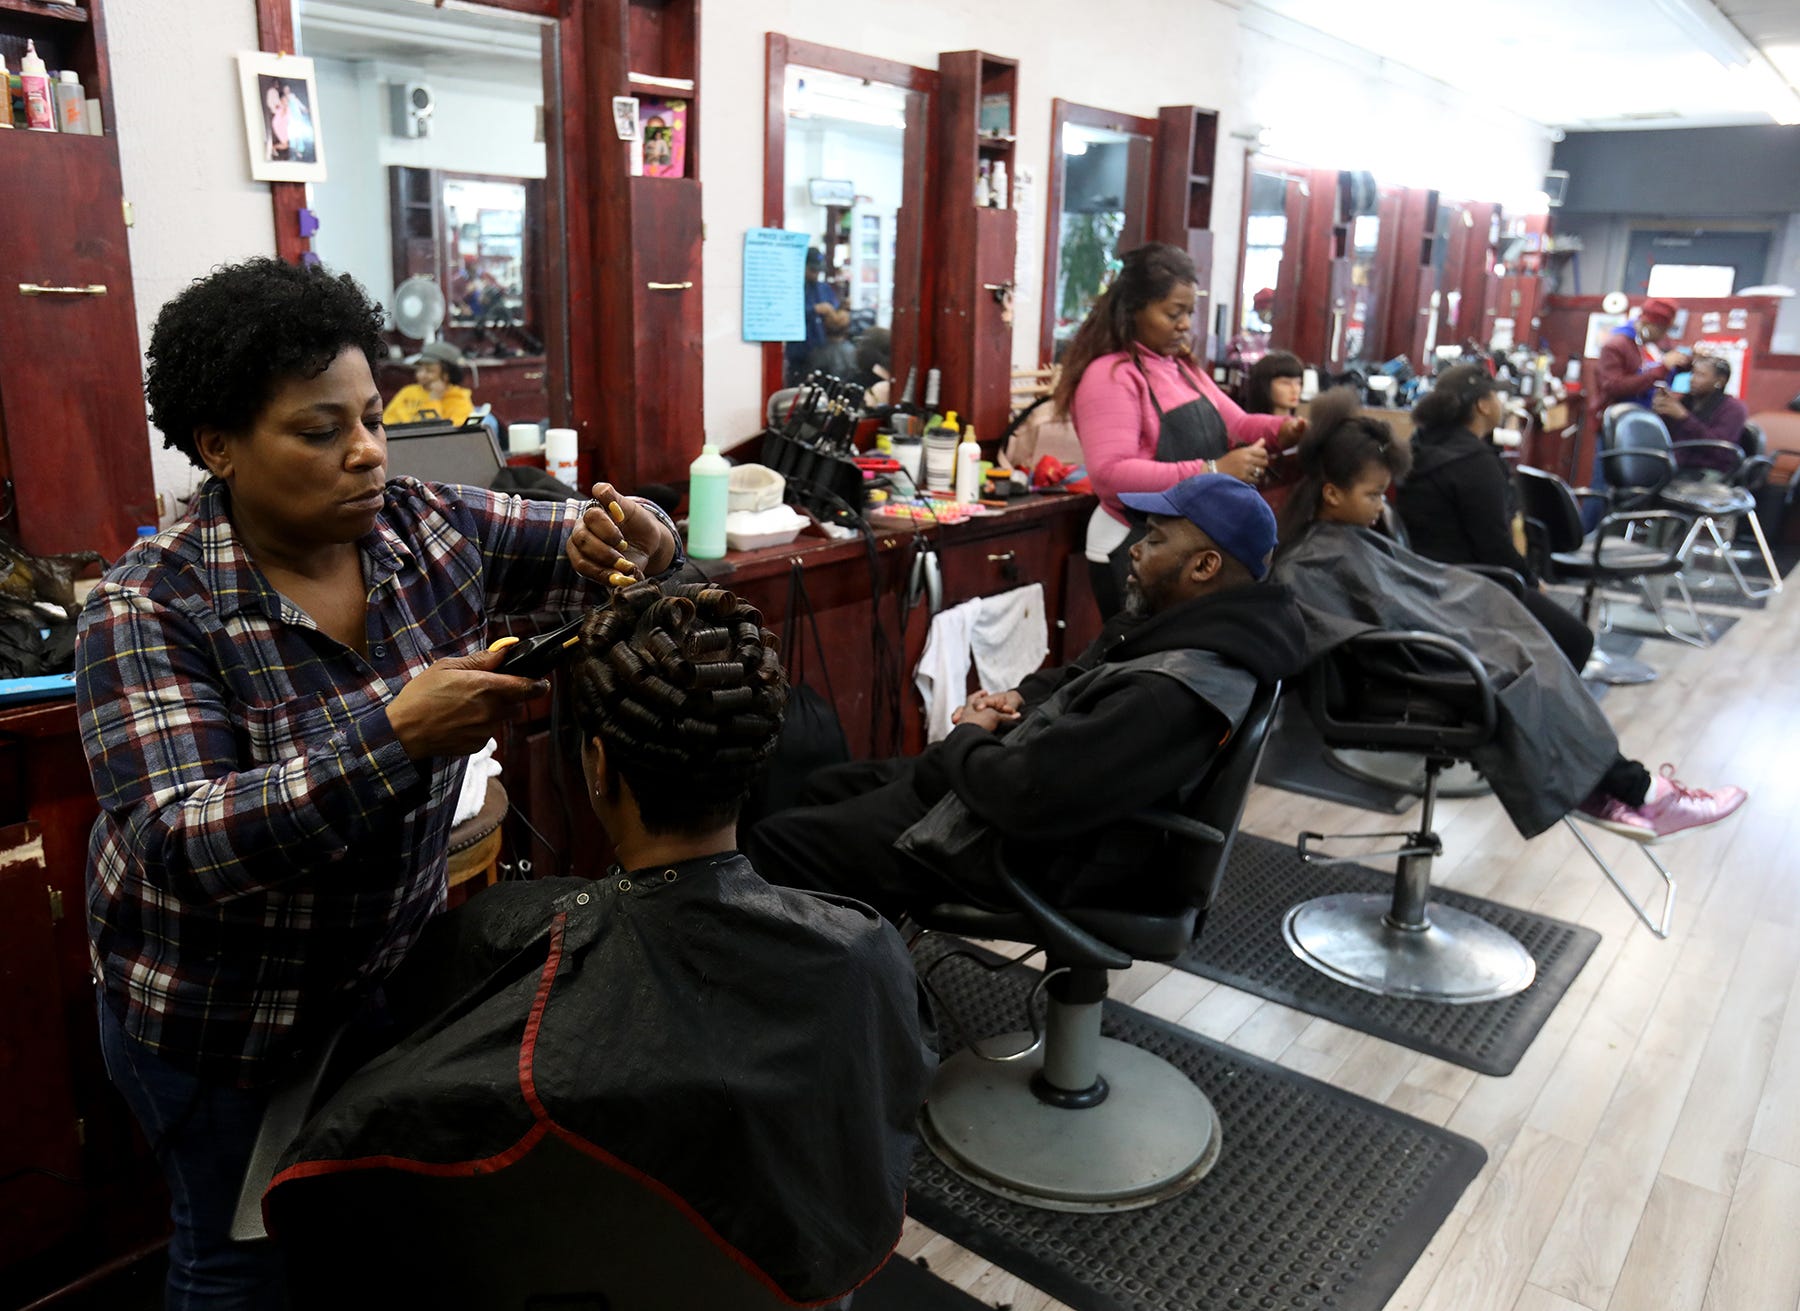 Before Easter: Inside Detroit barber shops, hair salons